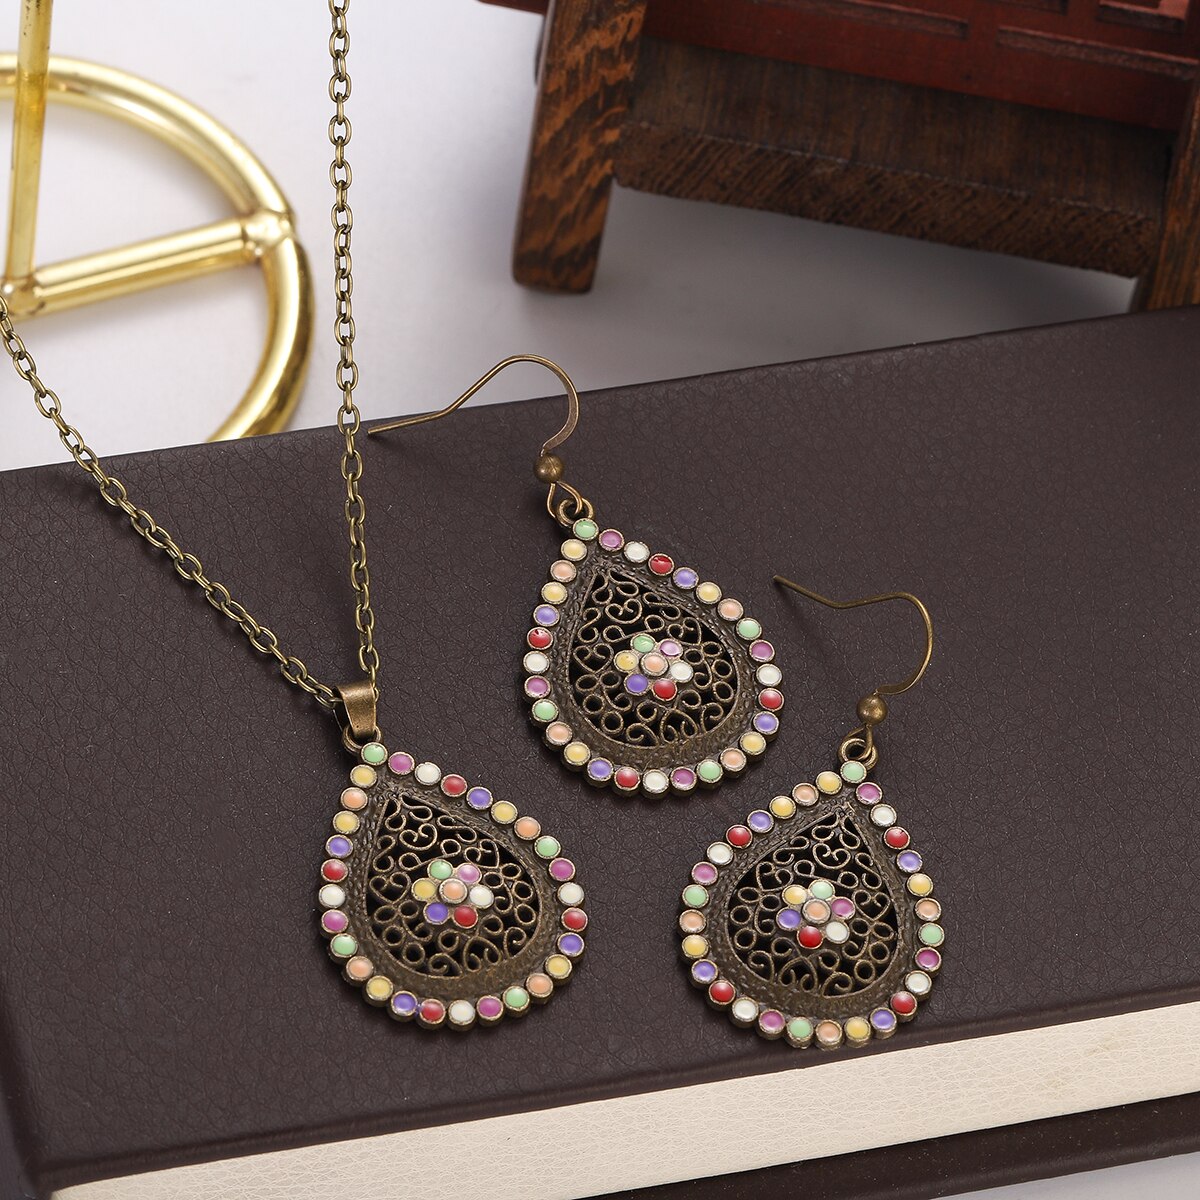 New-Boho-Colorful-Flower-Pendant-Necklace-Set-Women-Retro-Antique-Gold-Color-Hollow-Water-Drop-Jewel-1005004921038963-1